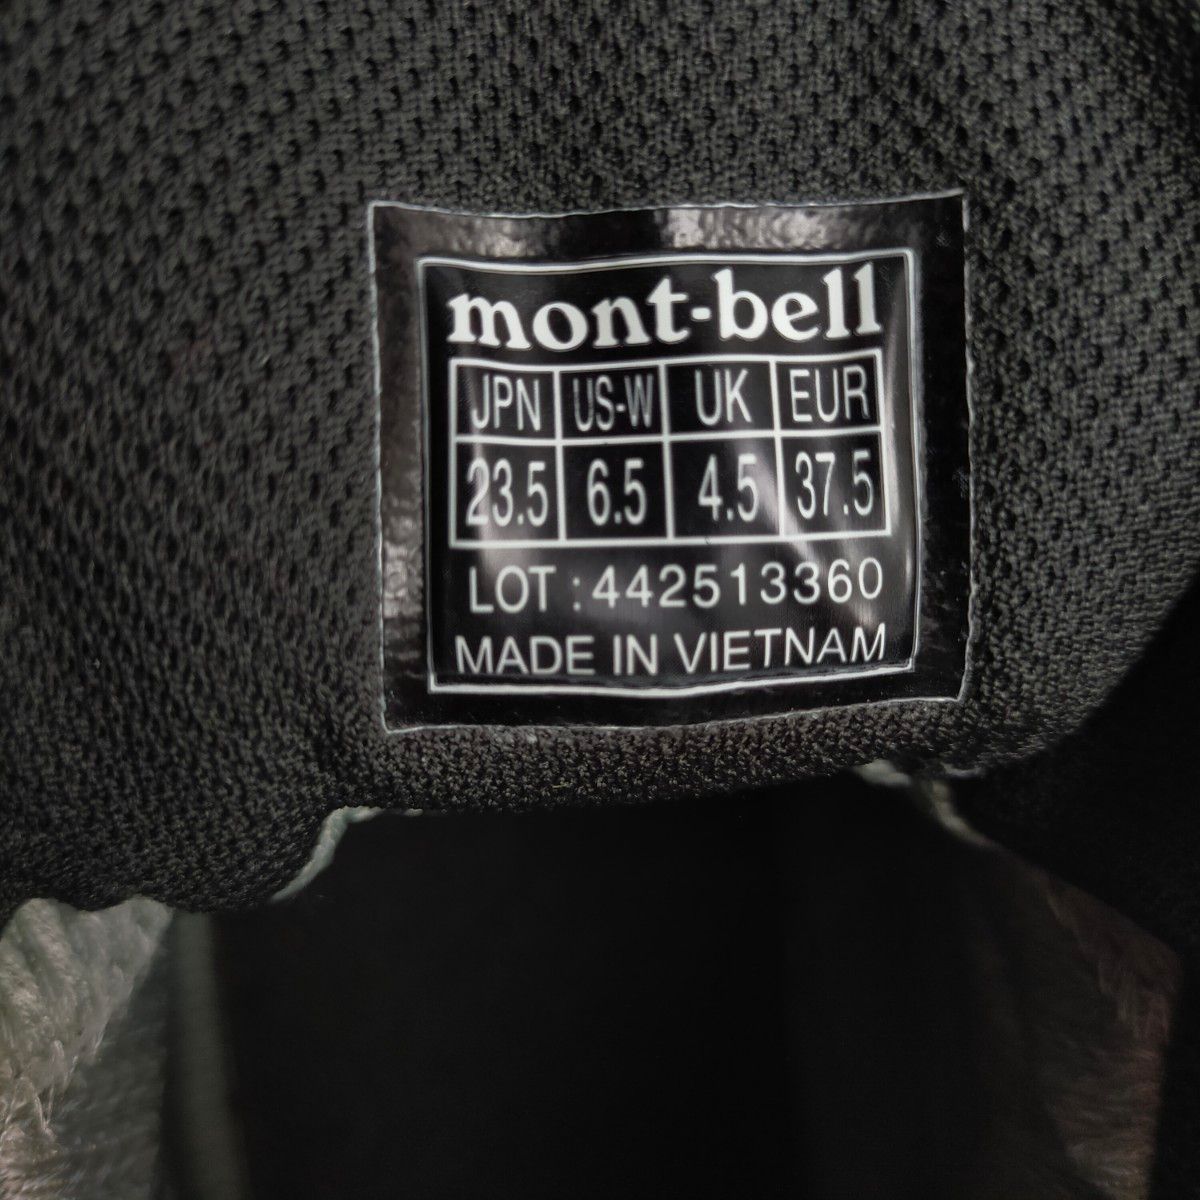 mont-bell モンベル トレッキングシューズ GORE-TEX ゴアテックス 全天候型 レディース 23.5cm